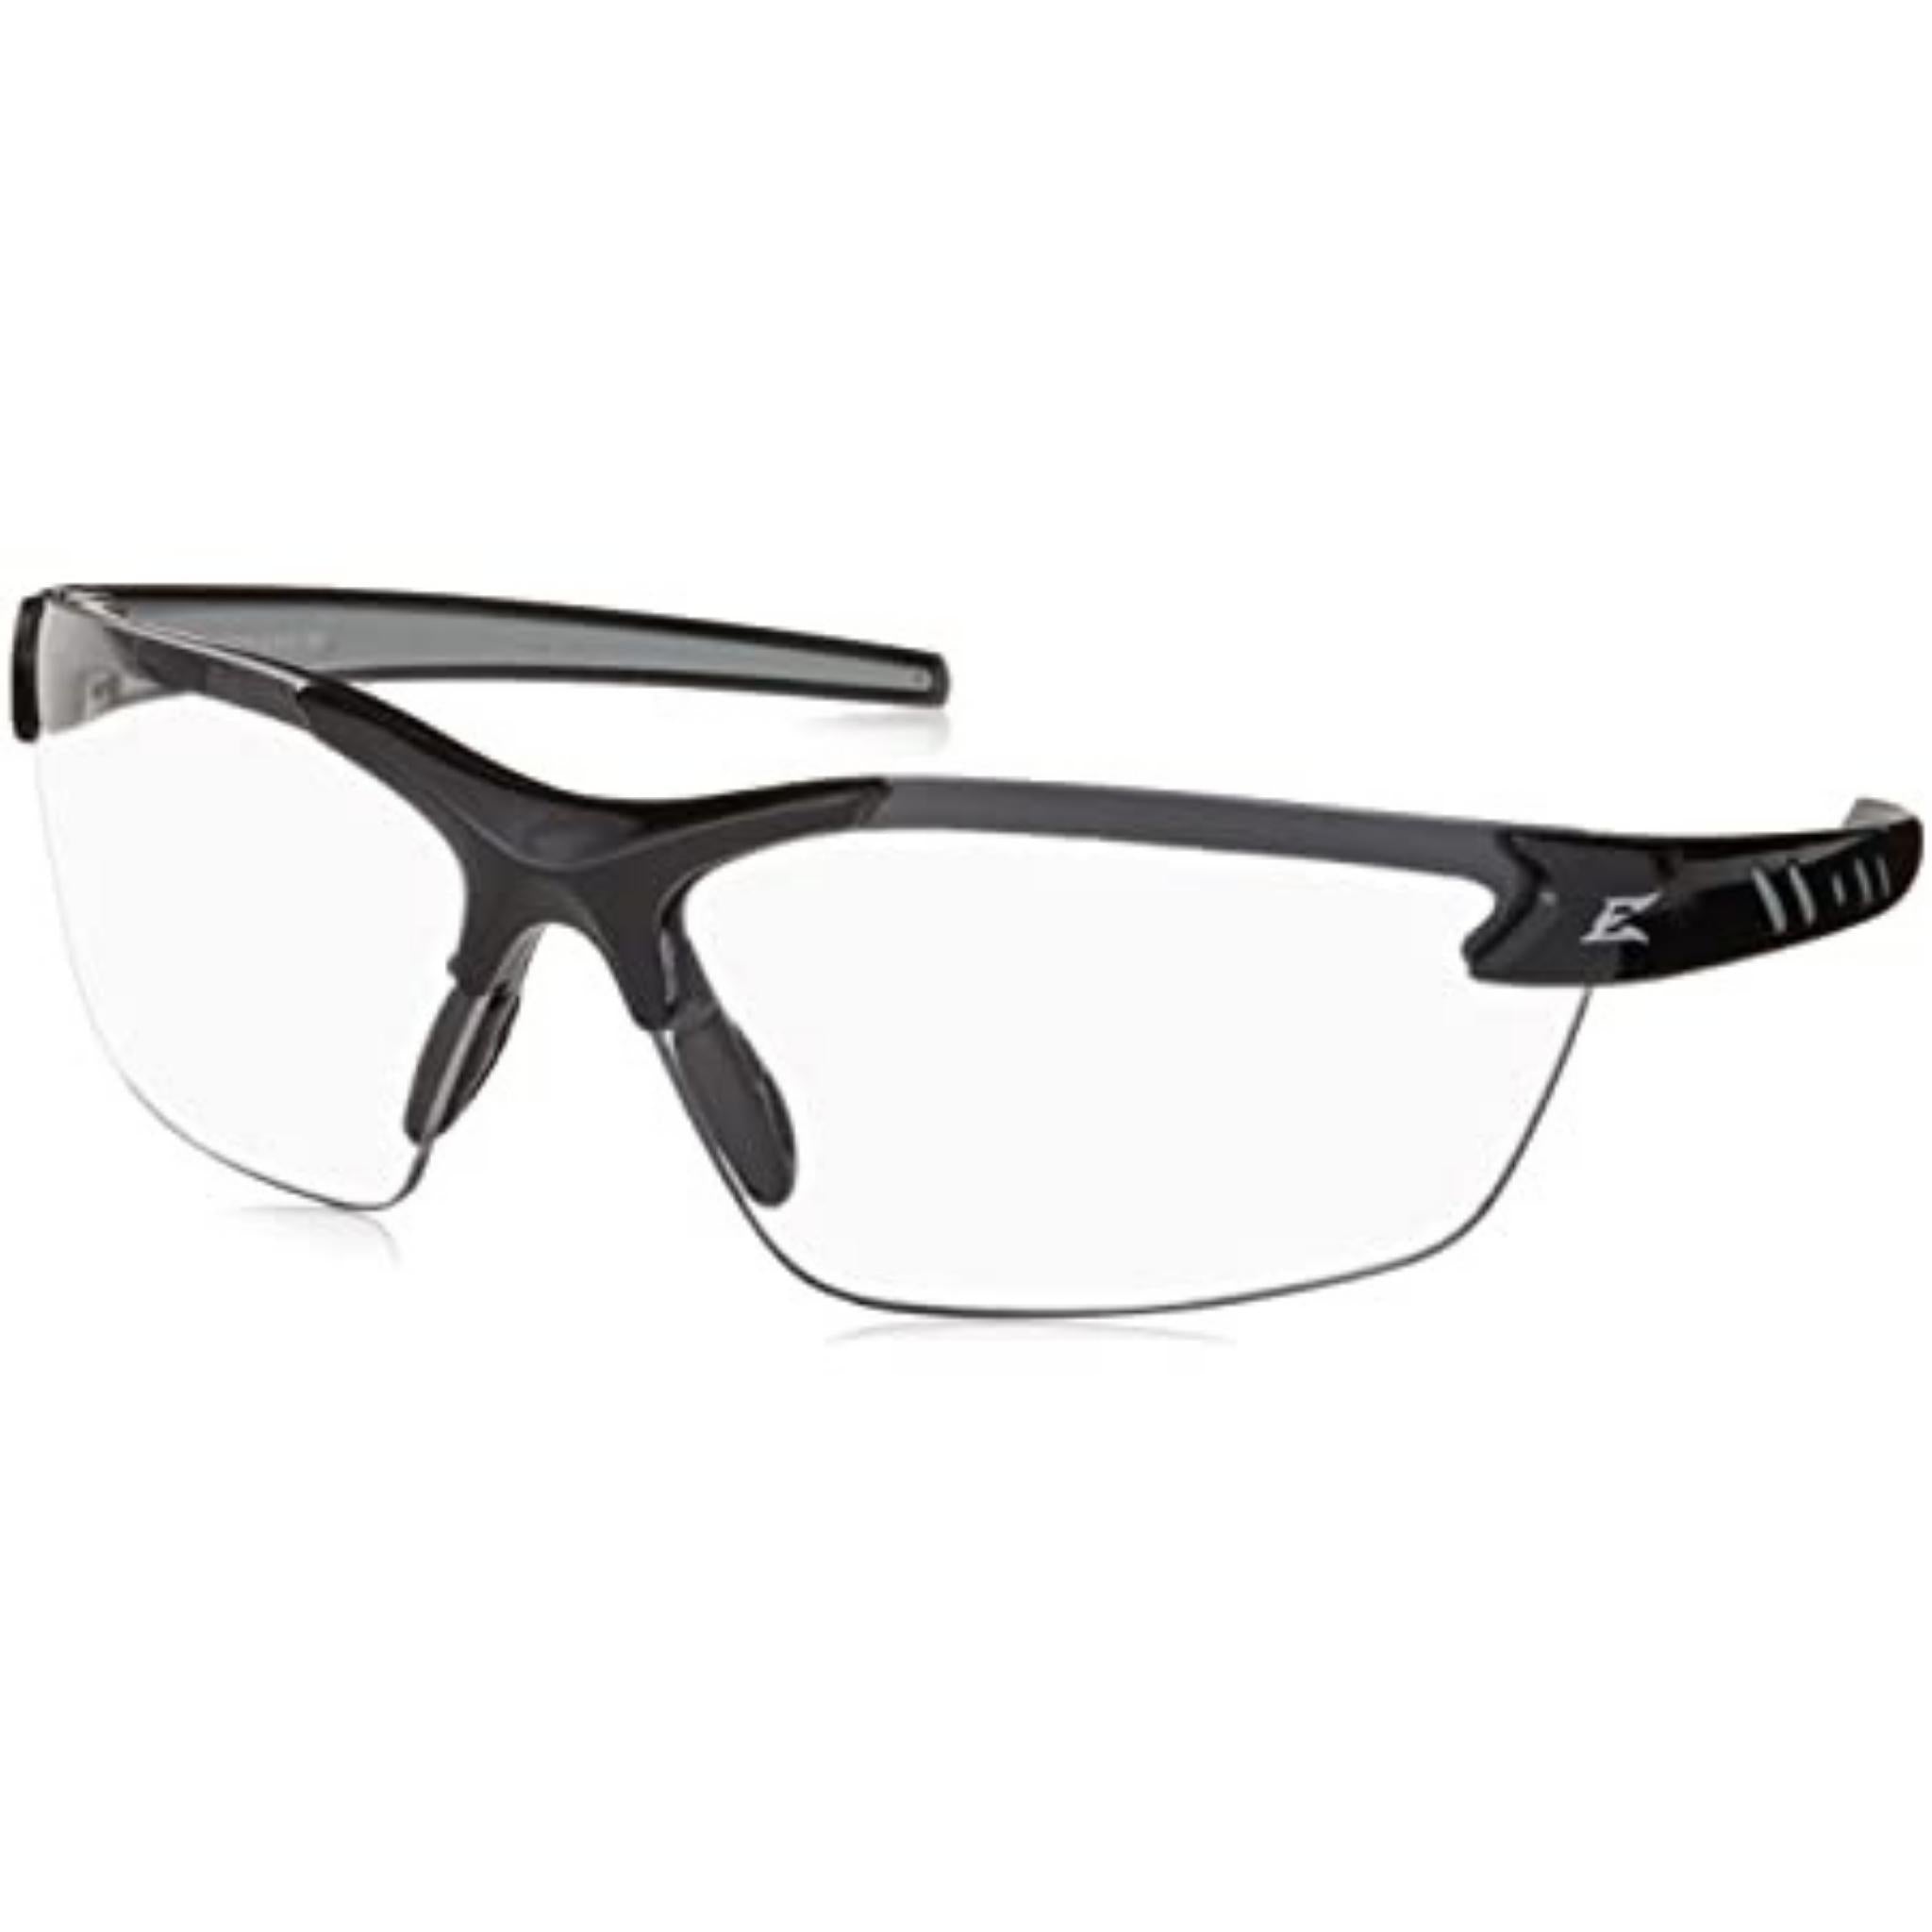 Edge DZ111-G2 Zorge G2 Safety Glasses - Black Frame - Clear Lens